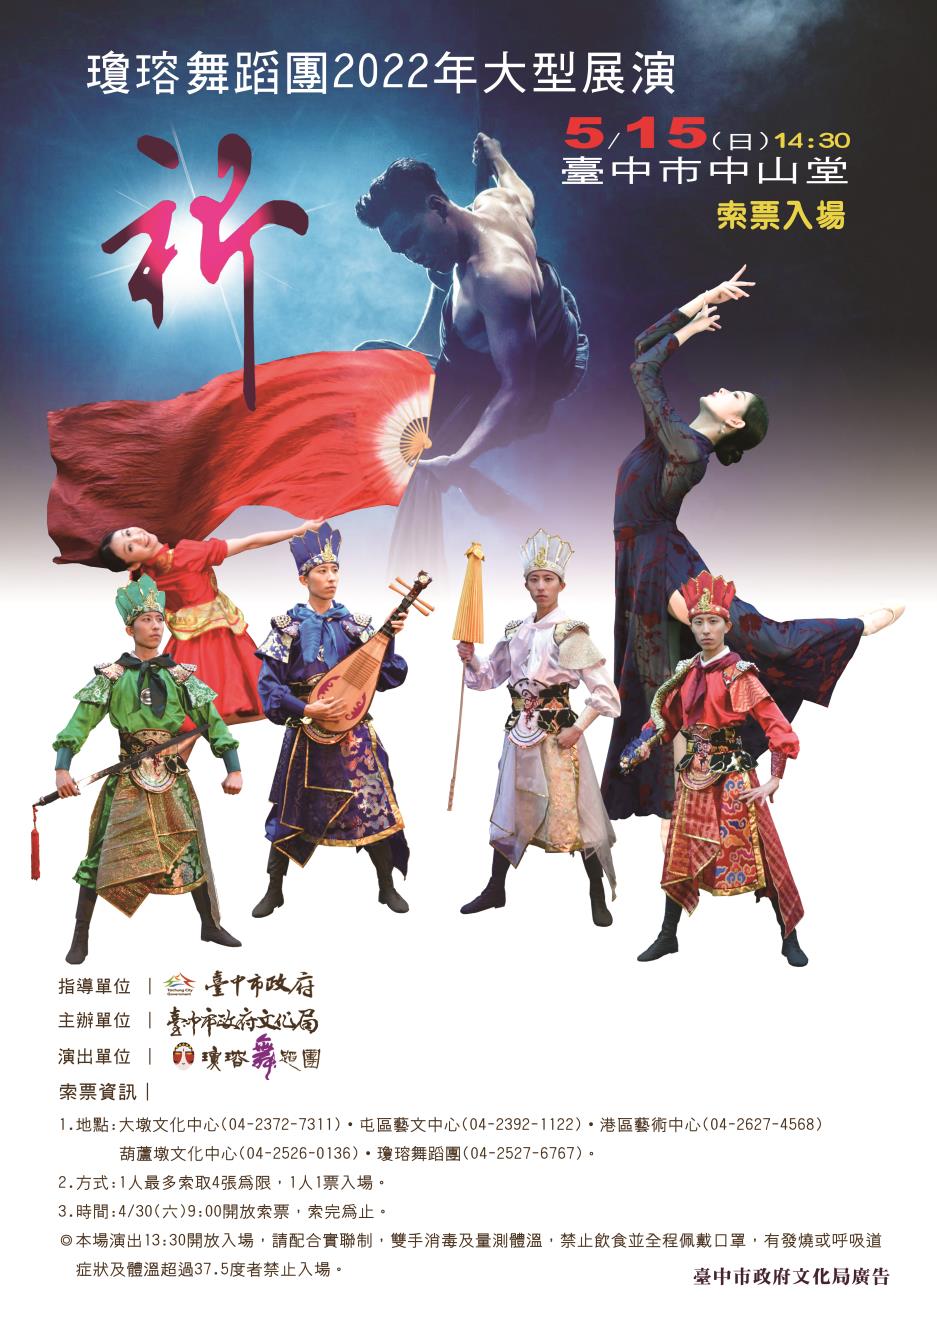 瓊瑢舞蹈團2022年大型展演《祈》 海報